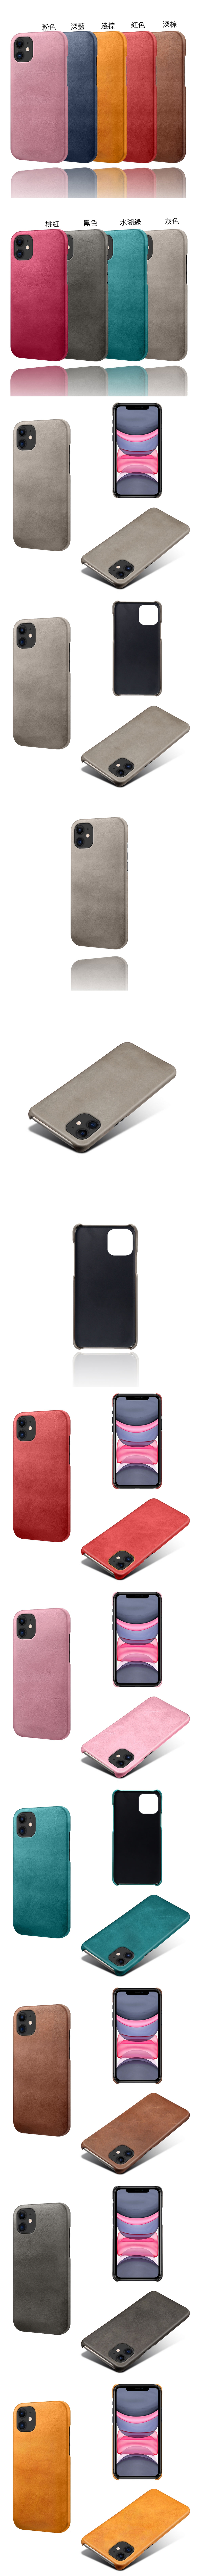 Apple IPhone 11 Pro Max i11 皮革保護殼(PLAIN) - 牛皮仿真皮紋單色背蓋素色多色手機殼保護套手機套